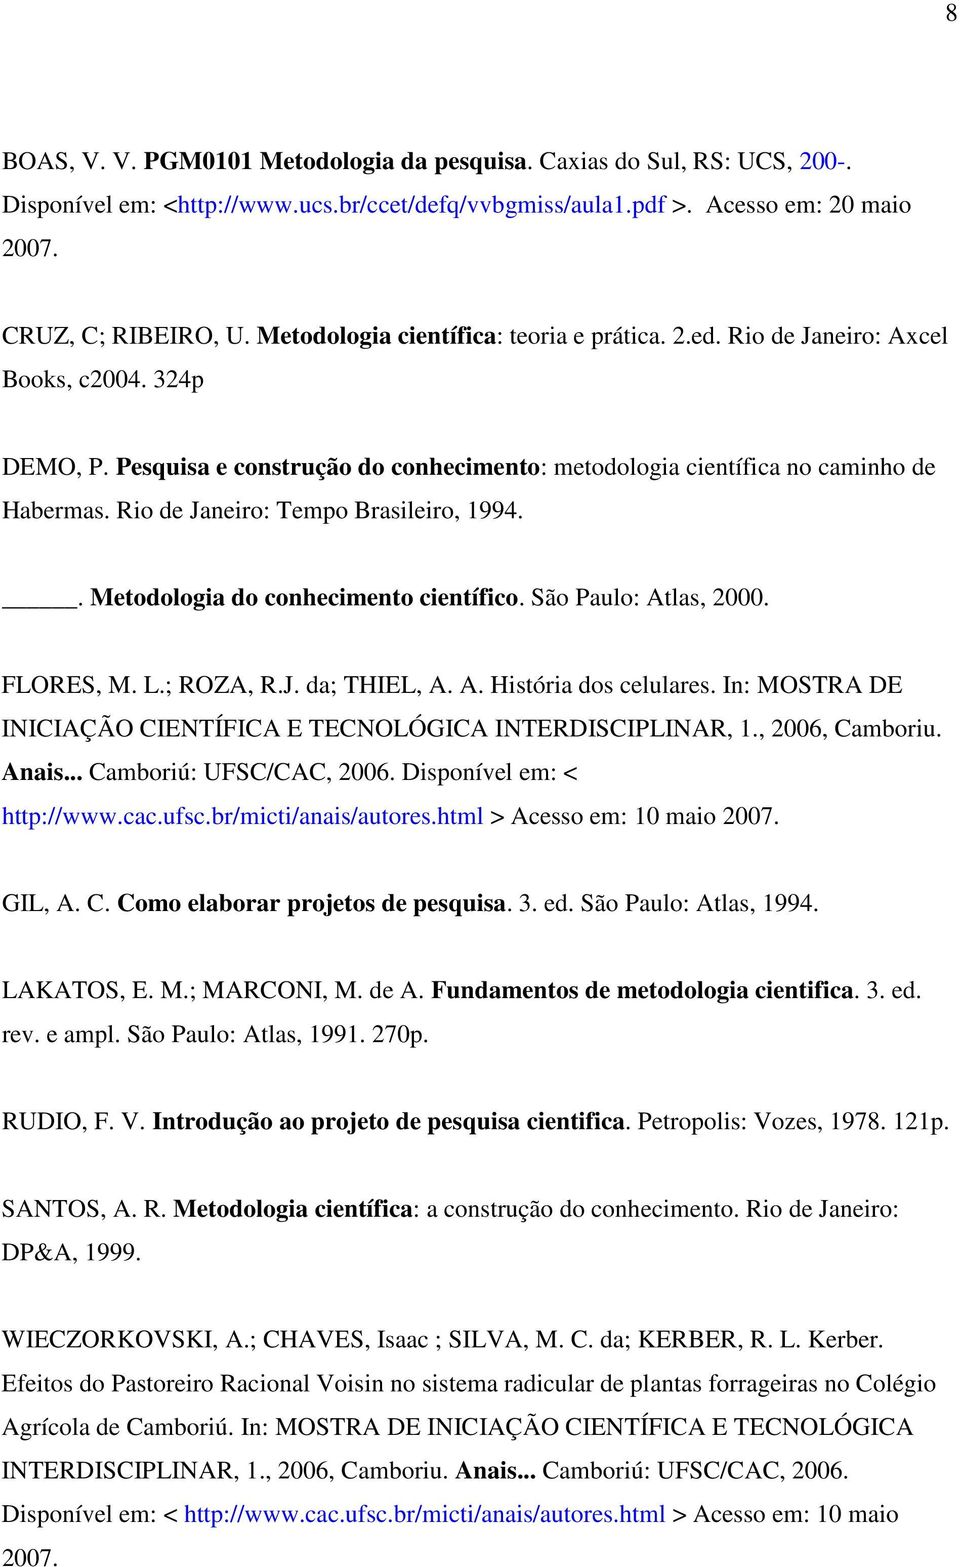 Rio de Janeiro: Tempo Brasileiro, 1994.. Metodologia do conhecimento científico. São Paulo: Atlas, 2000. FLORES, M. L.; ROZA, R.J. da; THIEL, A. A. História dos celulares.